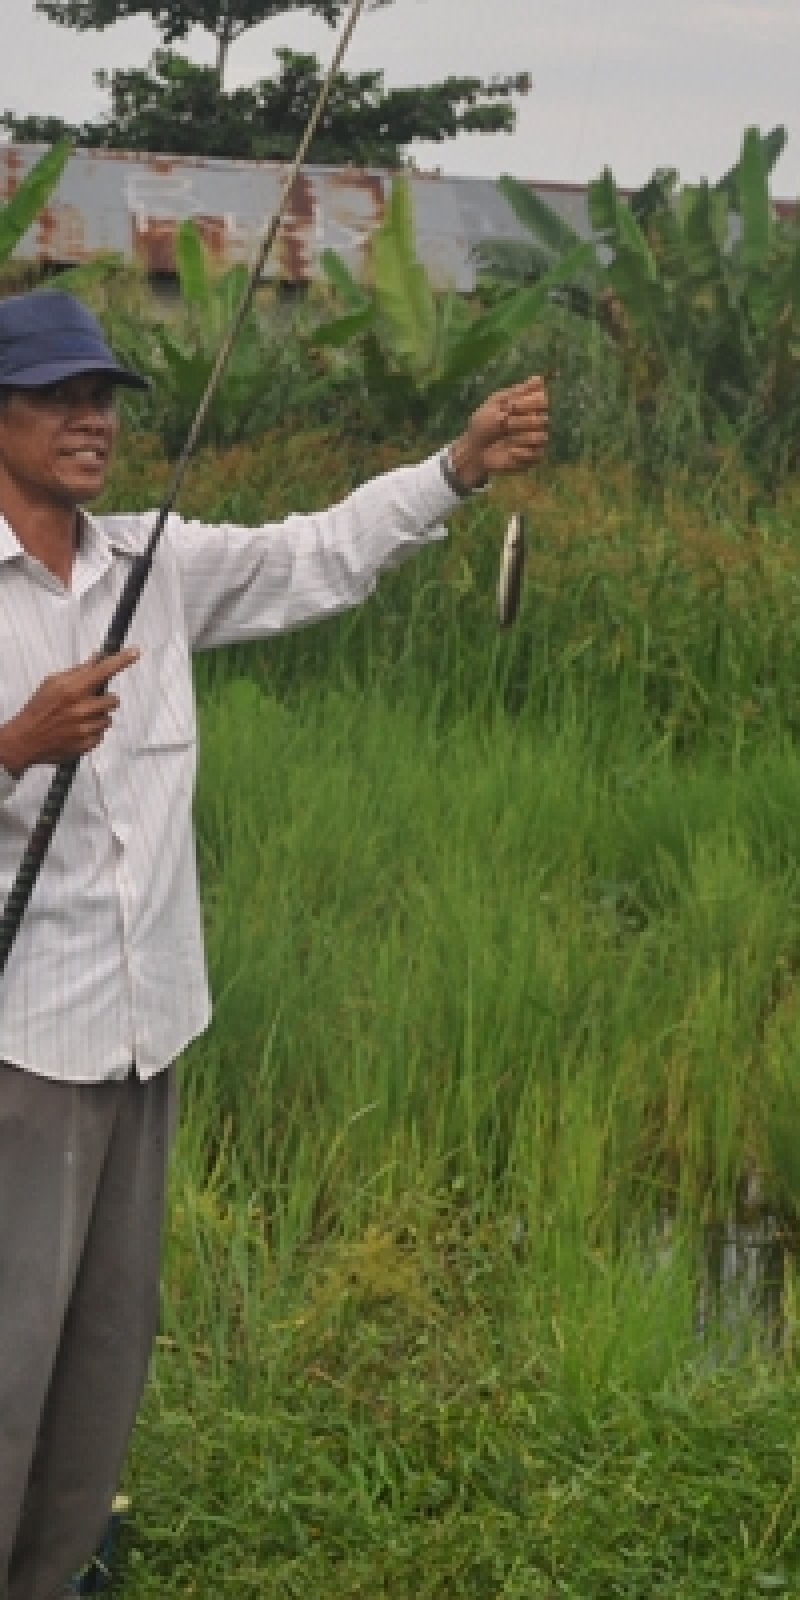 Memancing Cara Pemuda Banjarmasin Bunuh Waktu Puasa - ANTARA News  Kalimantan Selatan